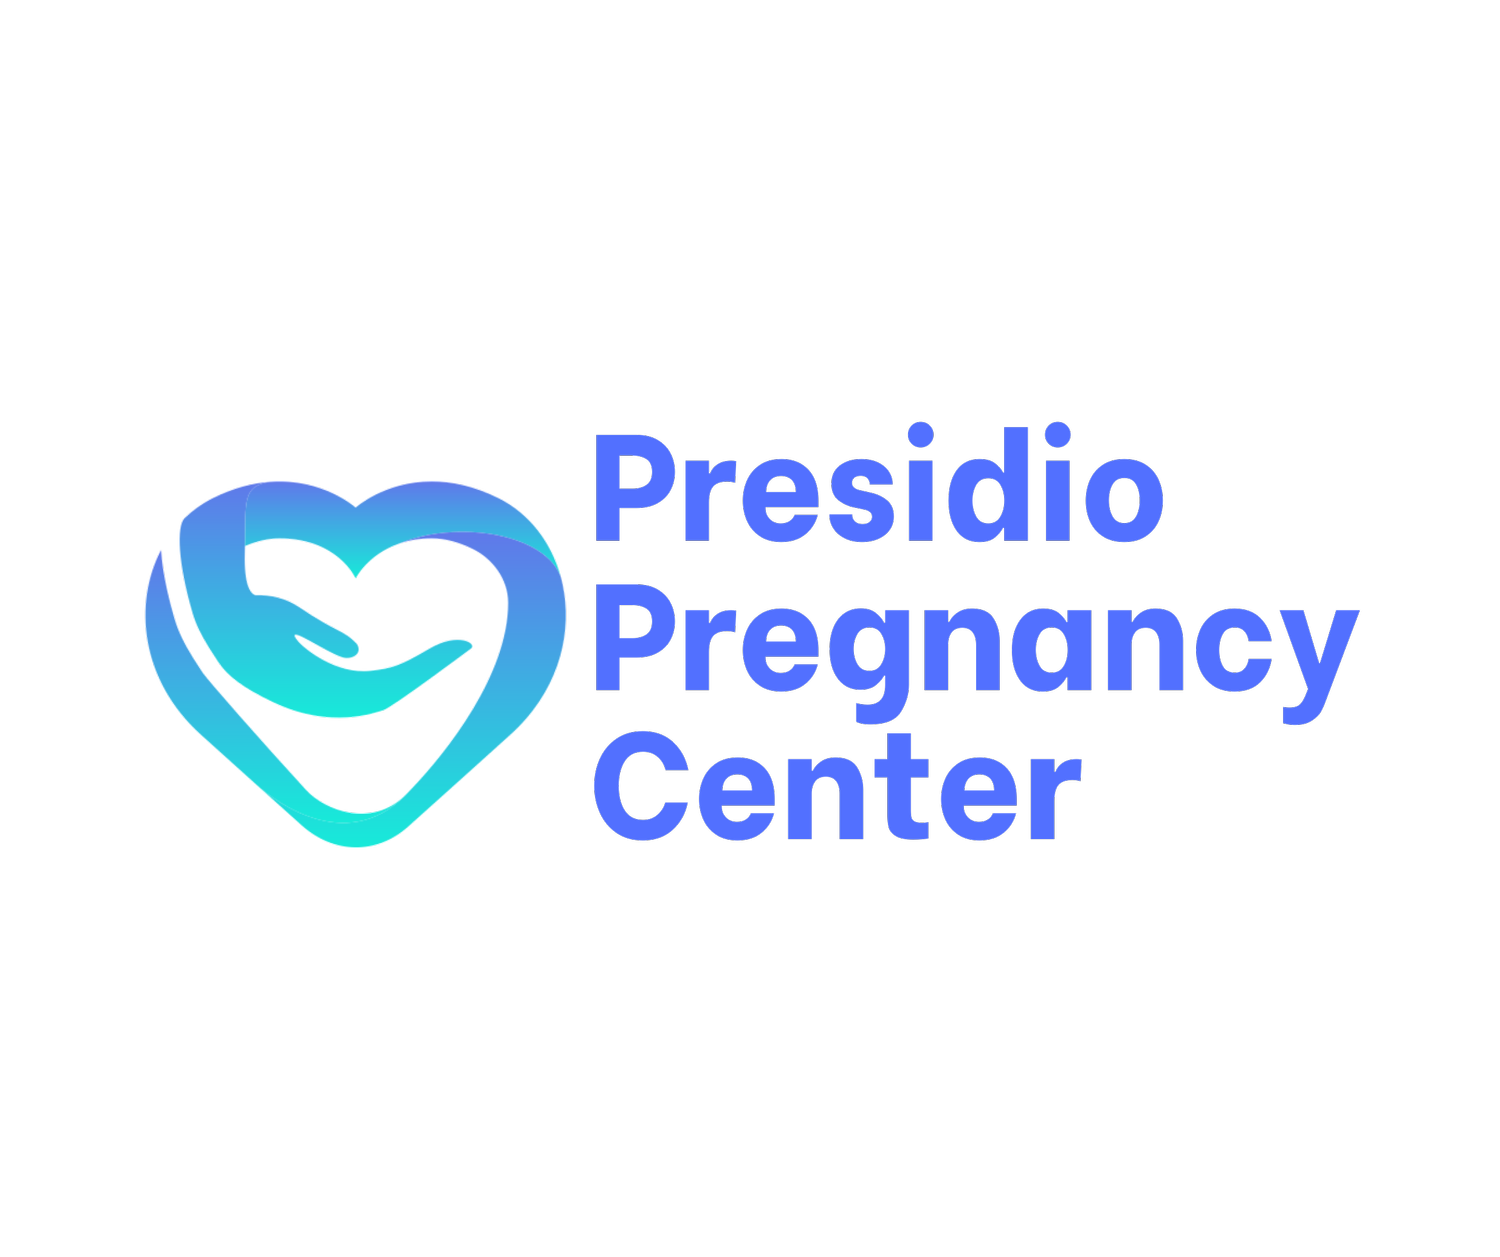 Presidio Pregnancy Center